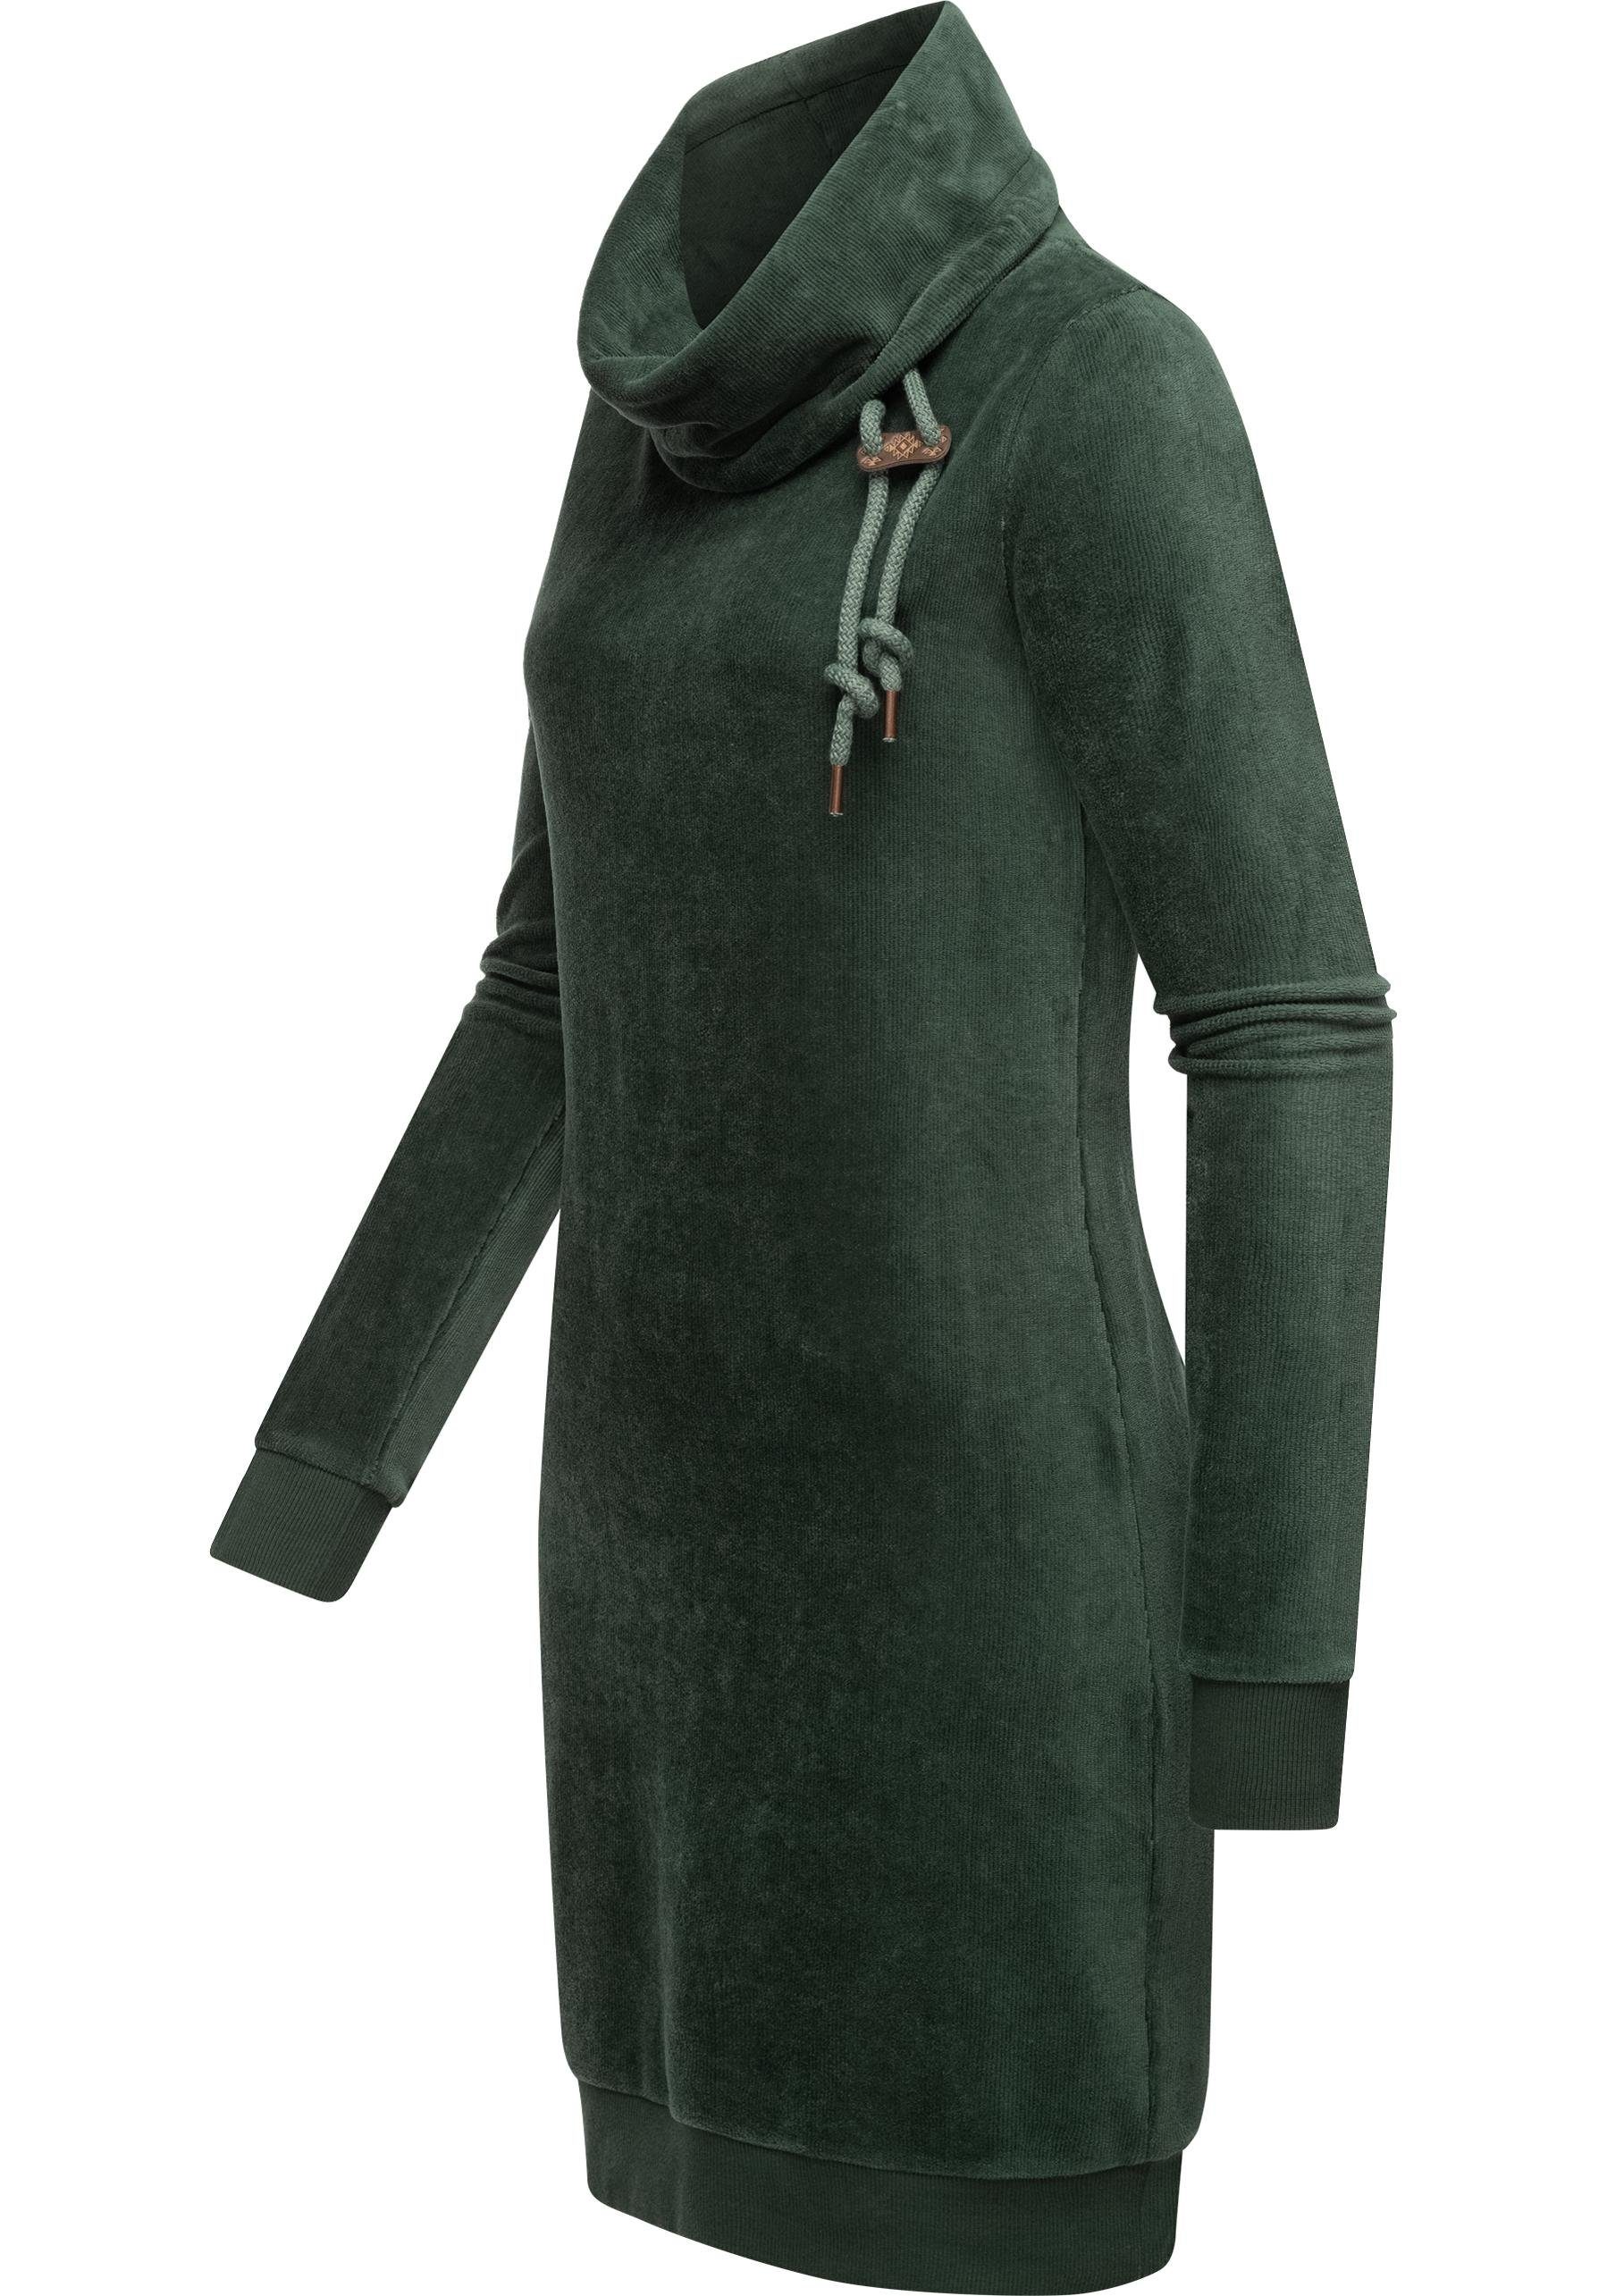 Velvet in apfelgrün stylisches Samtoptik Langarmkleid Sweatkleid Chloe Ragwear